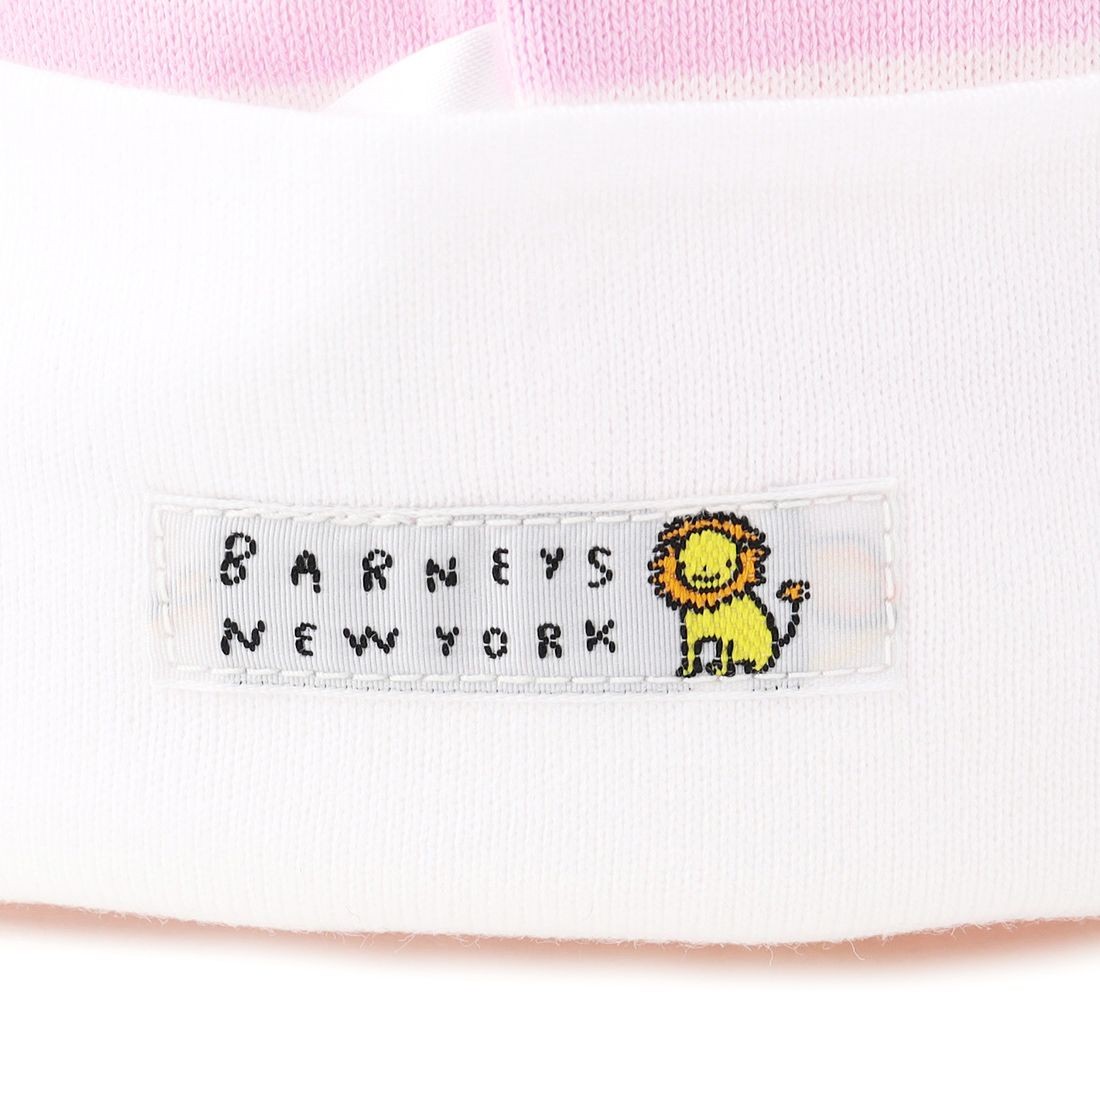 BARNEYS NEW YORK（バーニーズ ニューヨーク）ライオン刺繍ボーダー柄キャップ